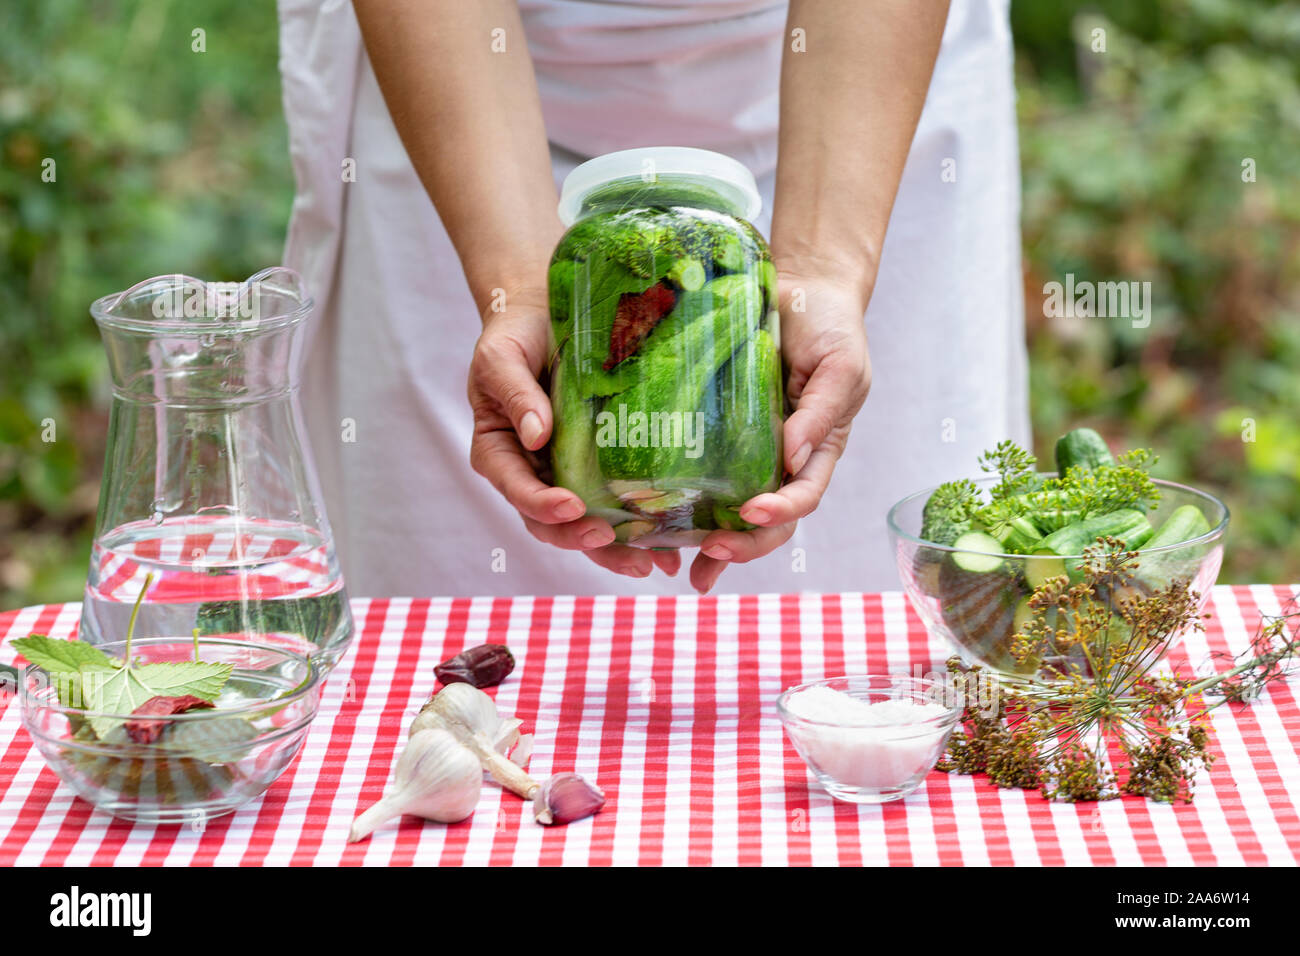 Hände von Cook Frau halten aus Glas der eingemachten Gurken. Rot karierte Tischdecke. Gewürze auf der Tischdecke für das Kochen. Natürlichen grünen Hintergrund Stockfoto